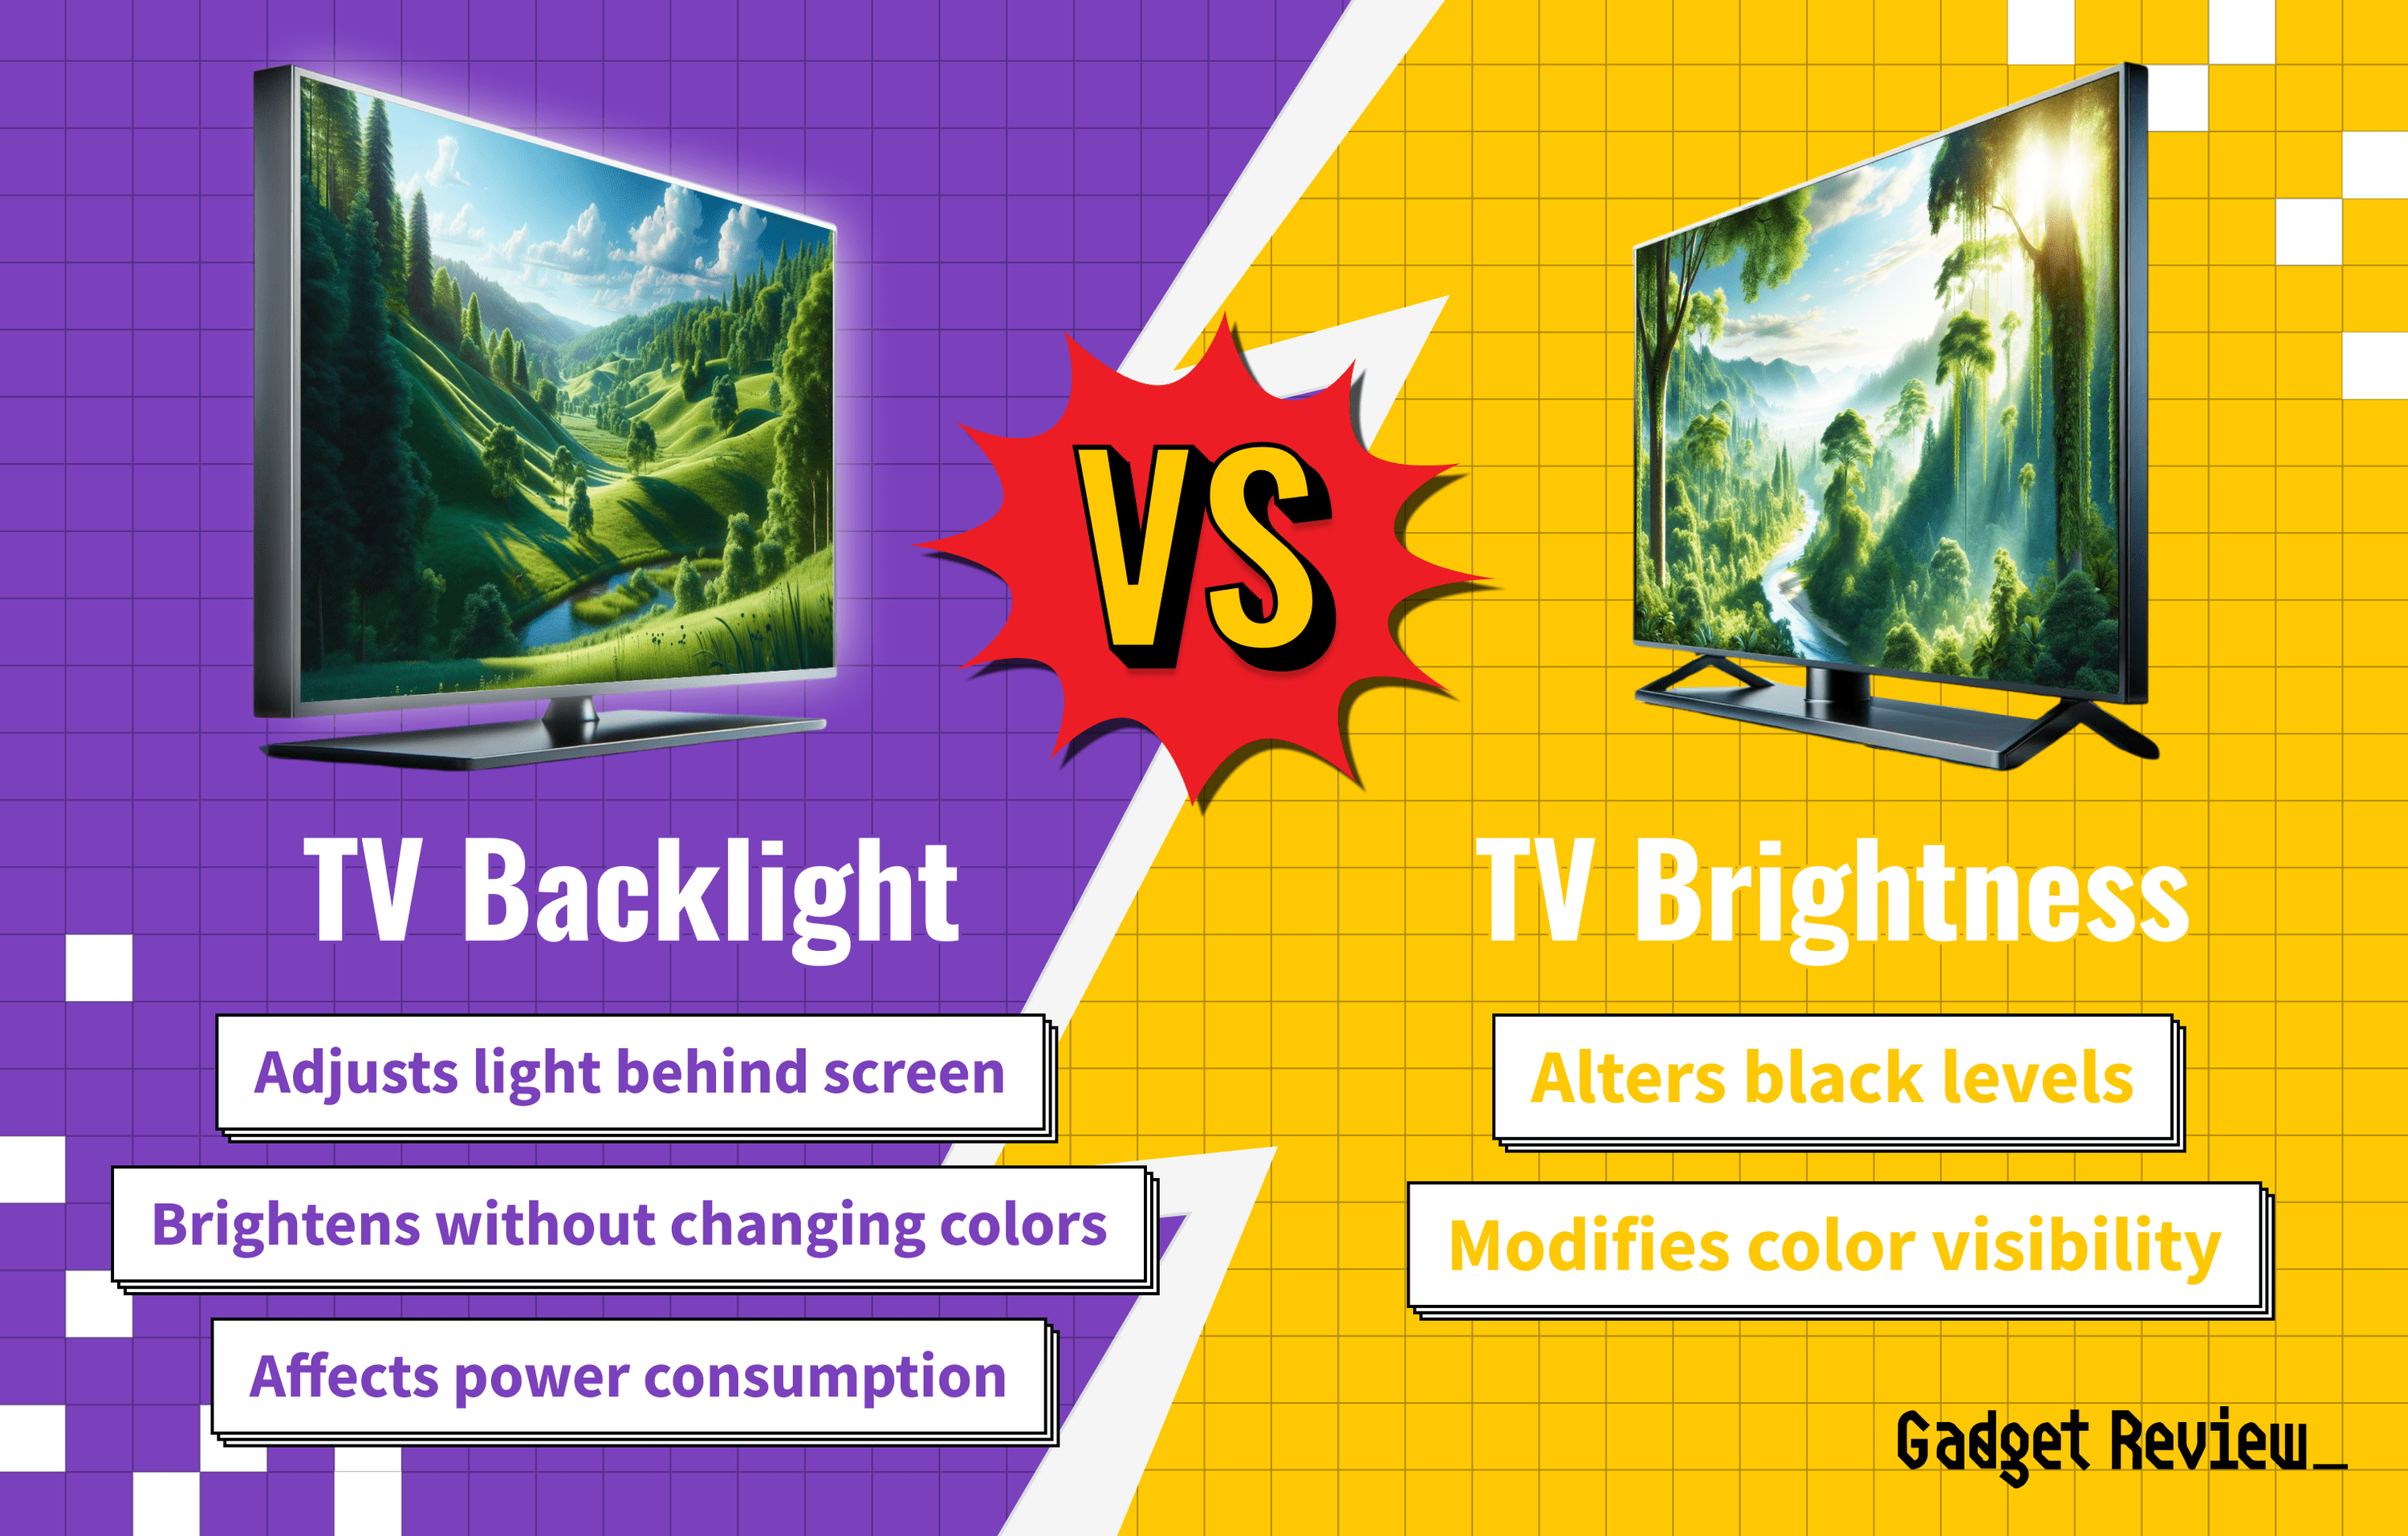 TV Backlight vs Brightness